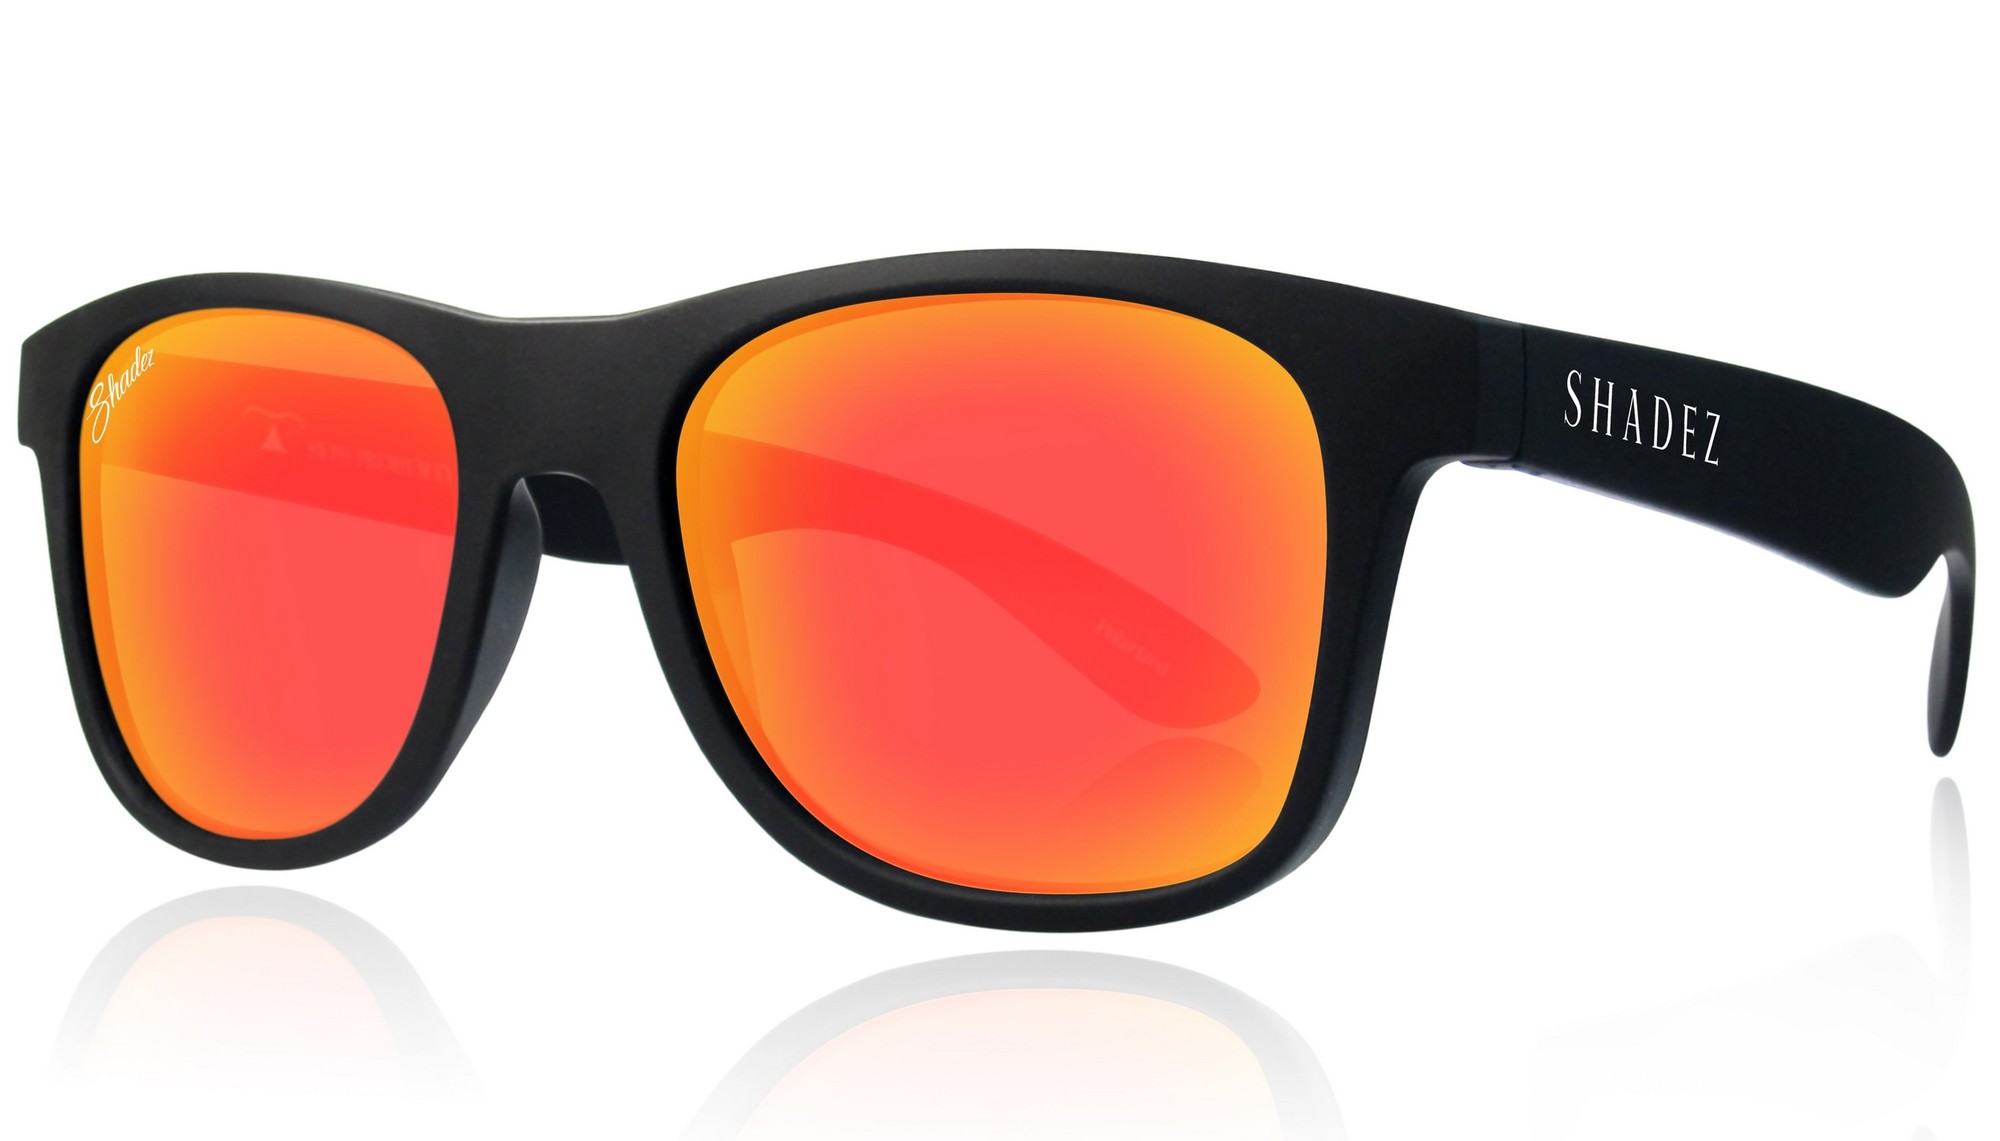 Shadez - gepolariseerde UV-Zonnebril voor volwassenen - Zwart/Rood